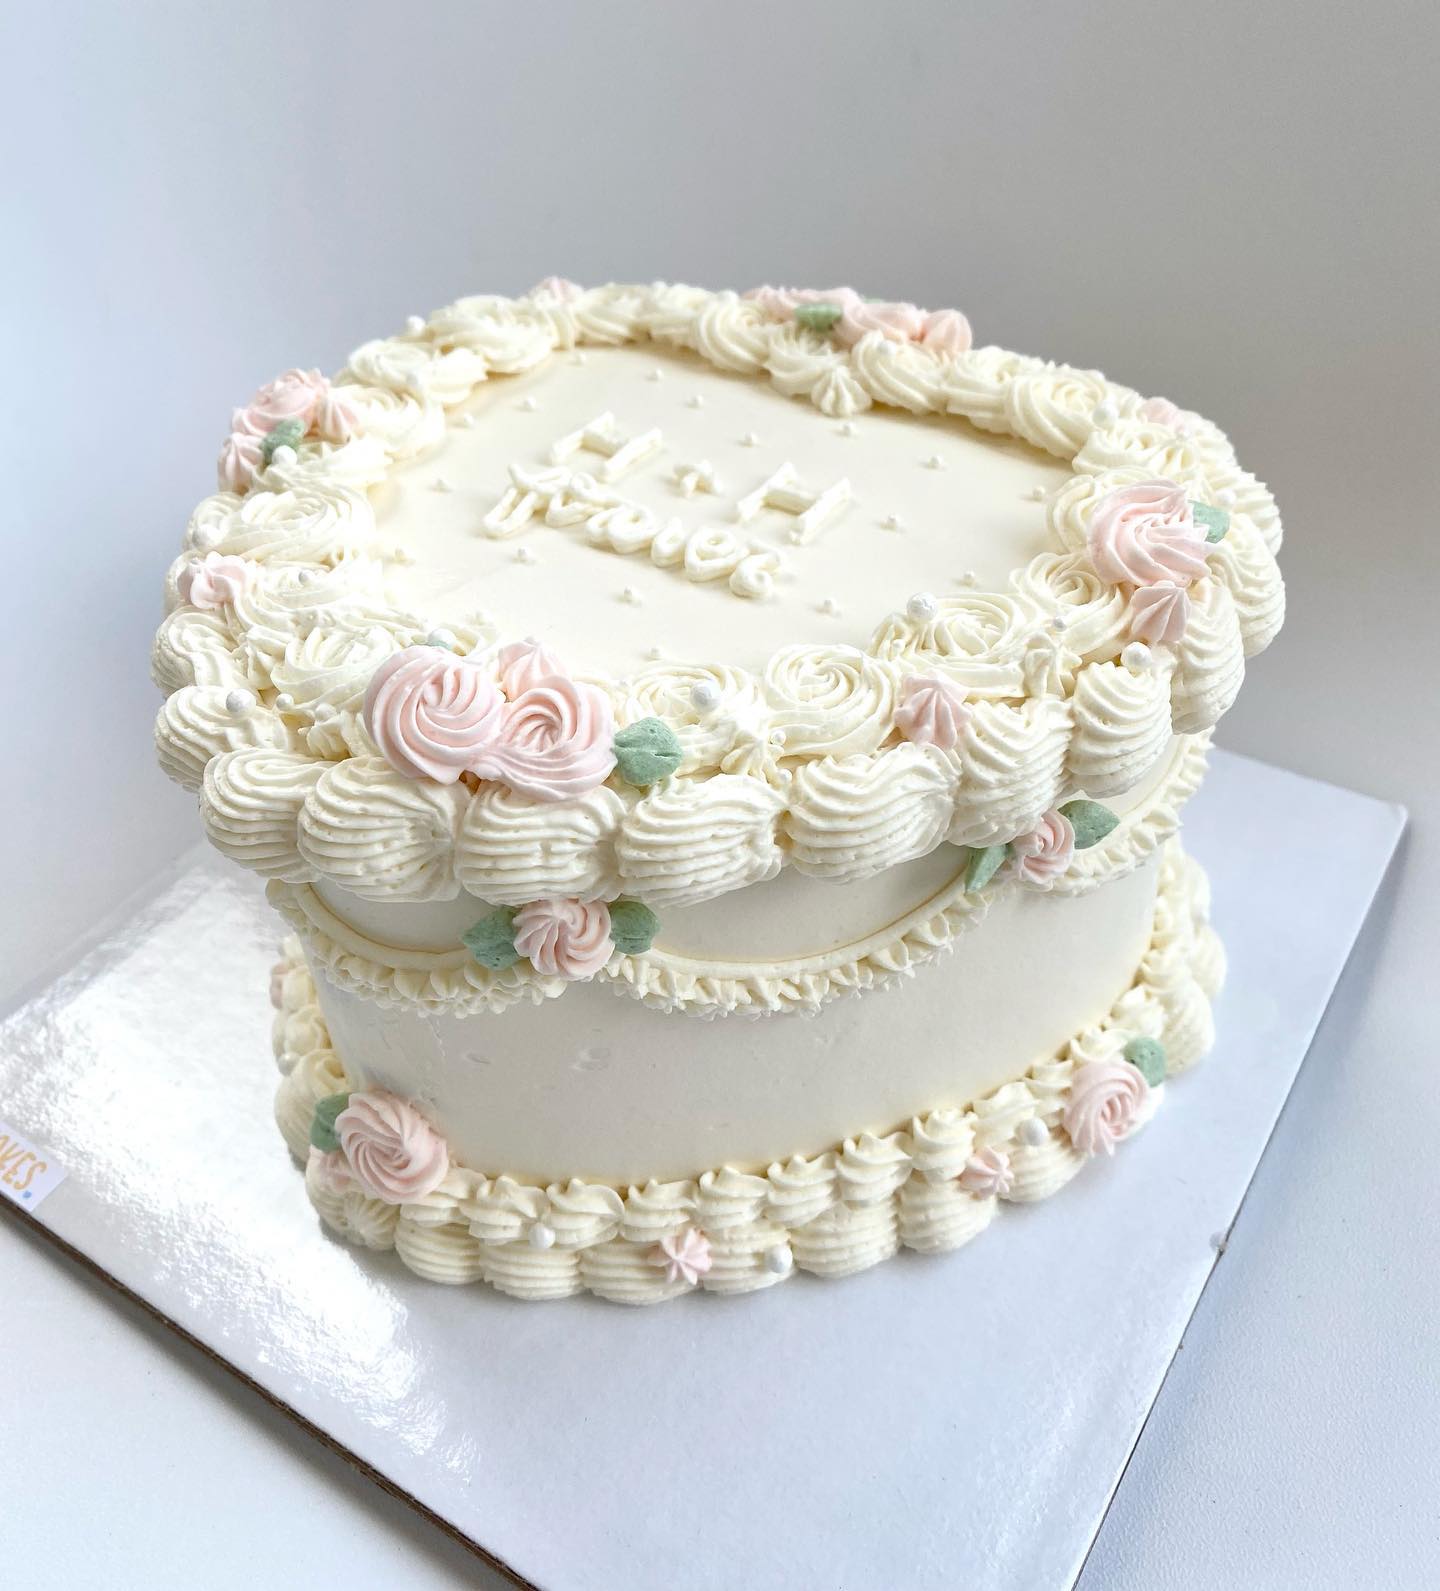 Send Fresh baked irresistible Red Velvet Cake - Infnity Gift Shop